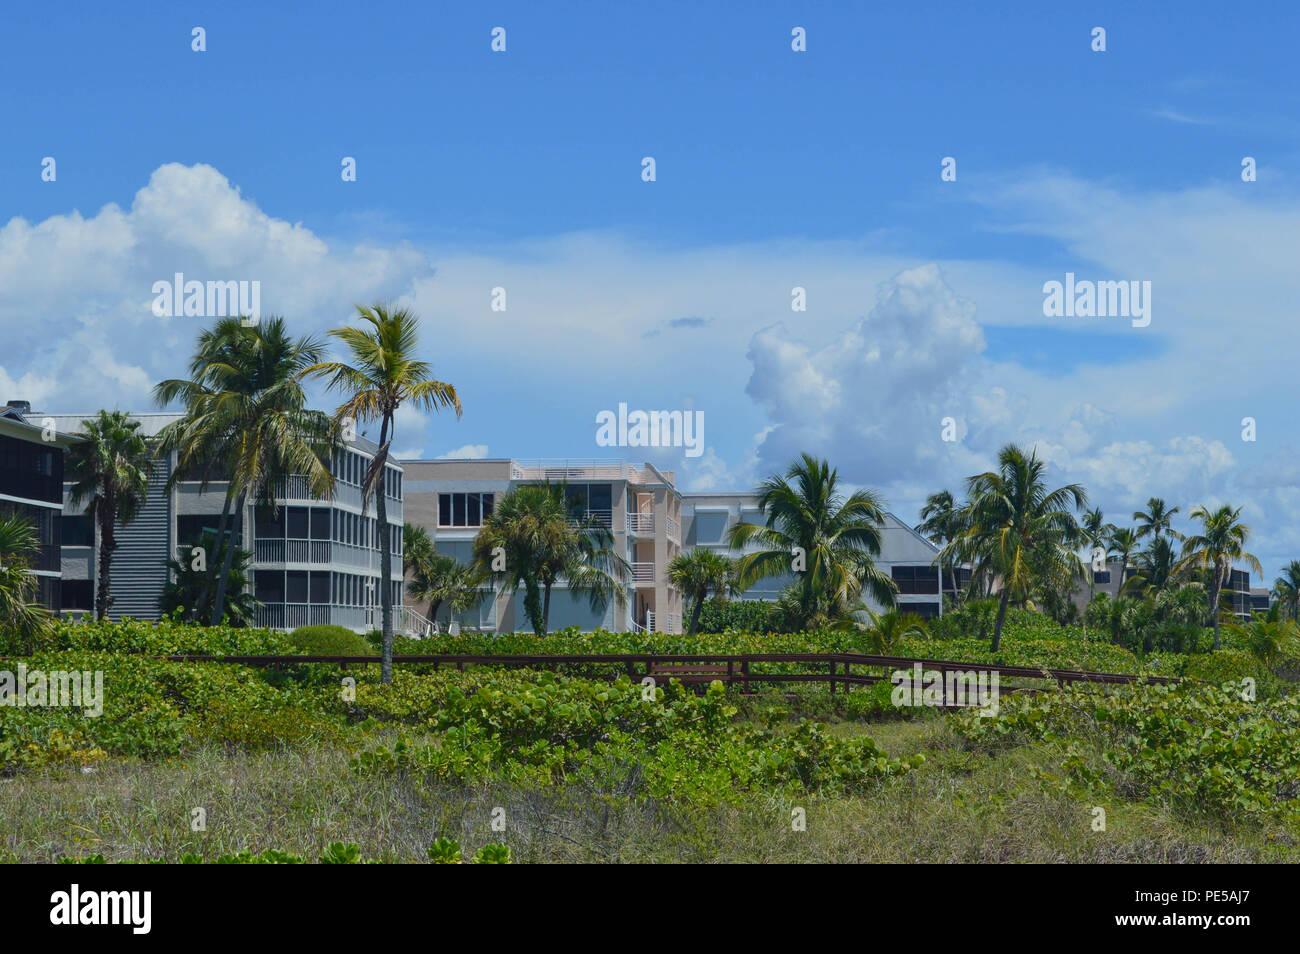 Vue de front de condos sur l'île de Sanibel, en Floride Banque D'Images